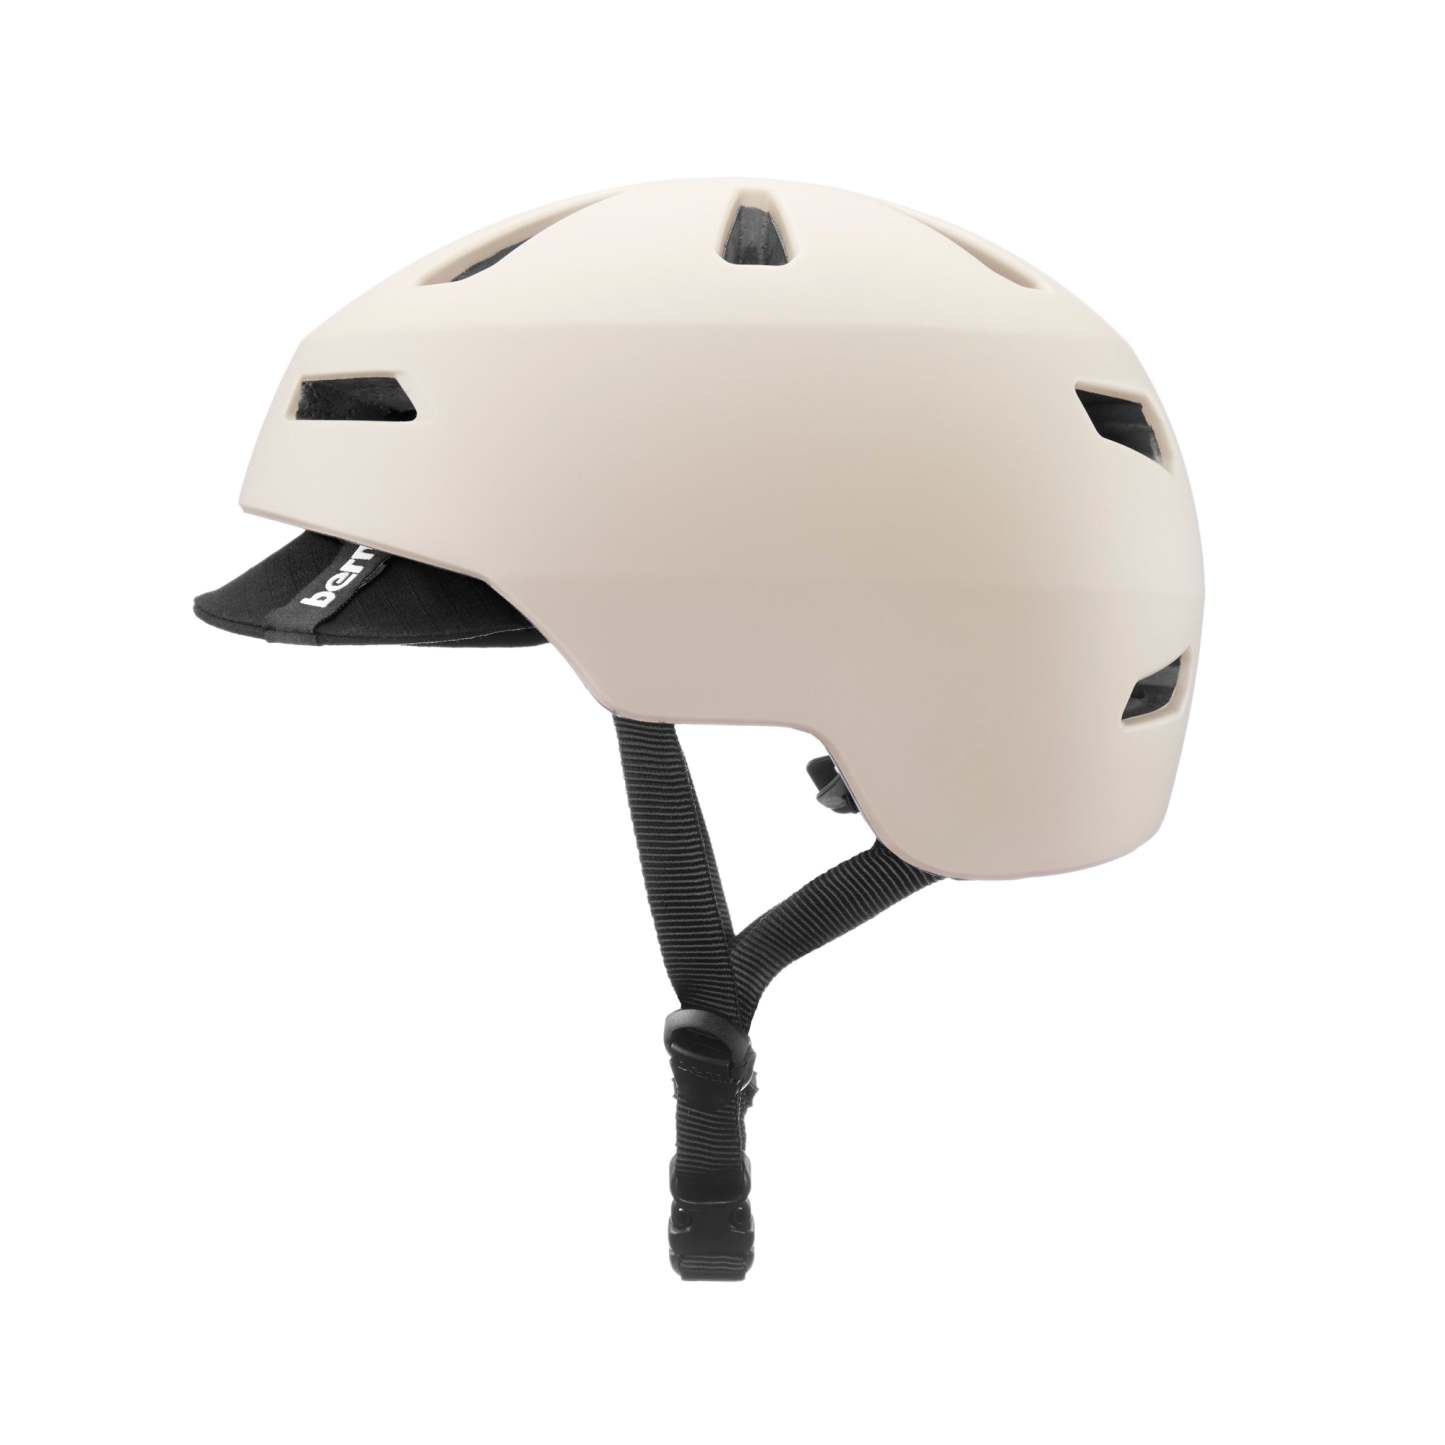 BERN - Brentwood 2.0 (Matte Sand) Helmet